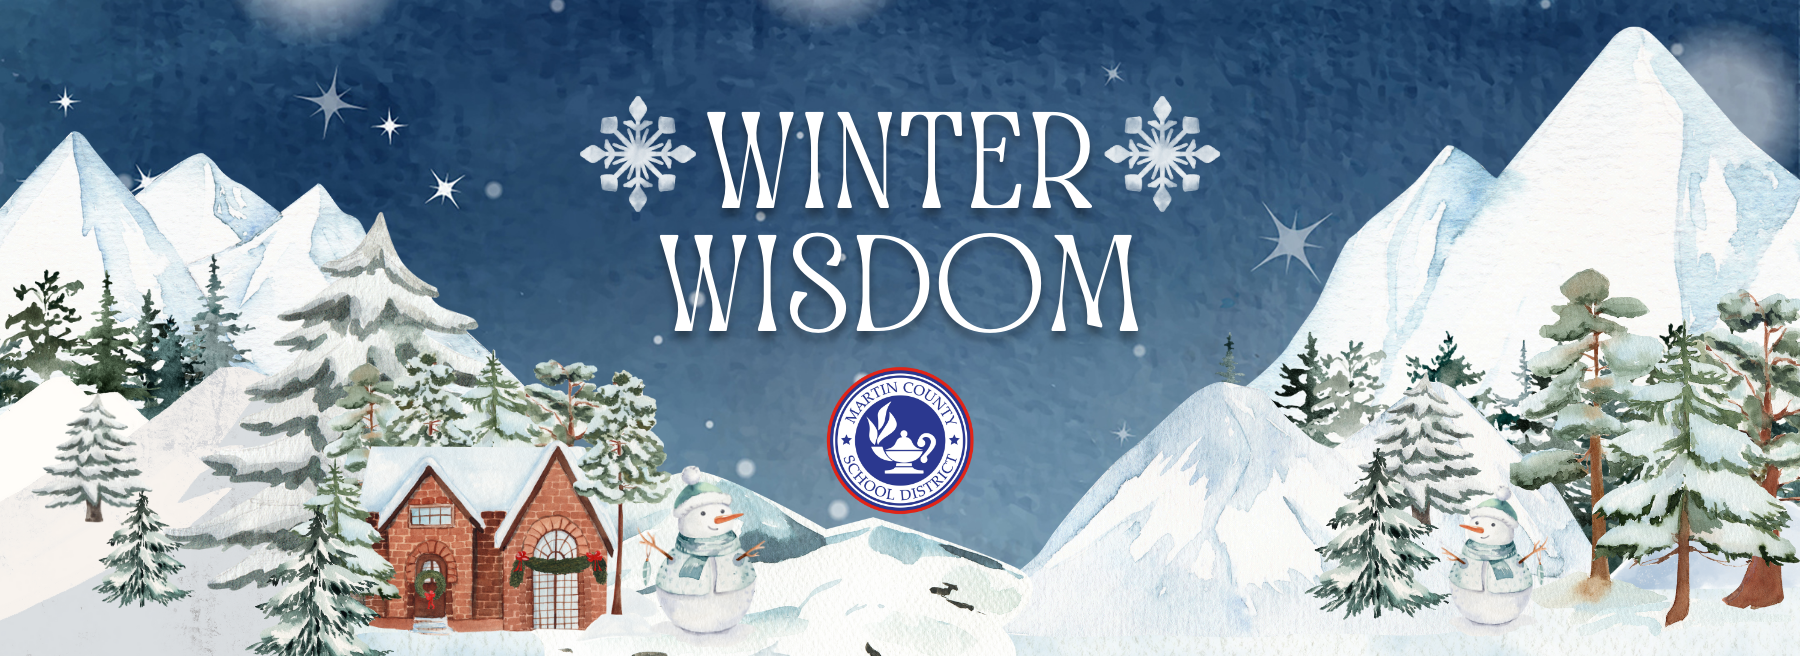 Winter Wisdom